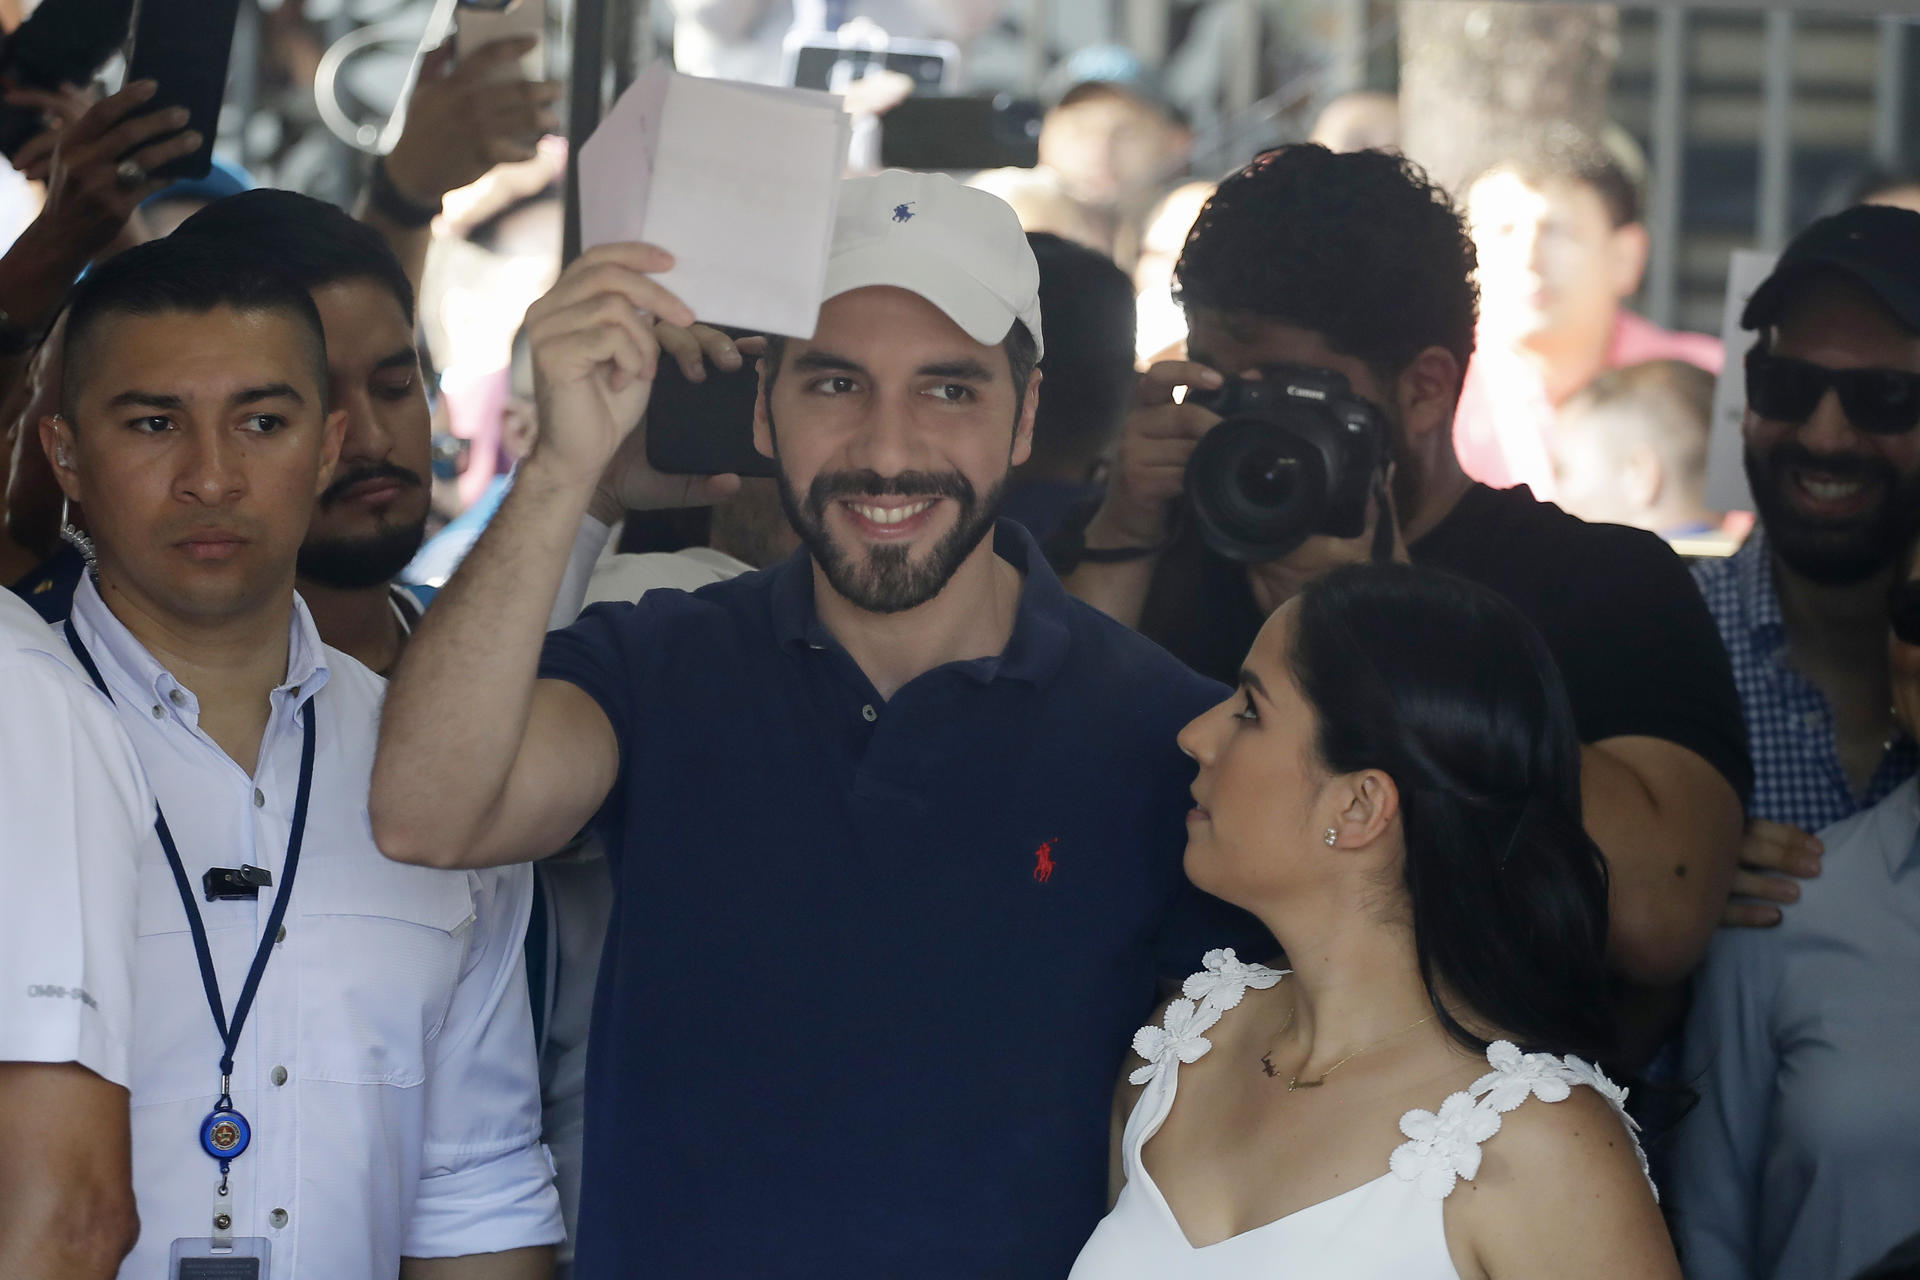 Bukele's Nuevas Ideas party won 28 mayoral positions in El Salvador